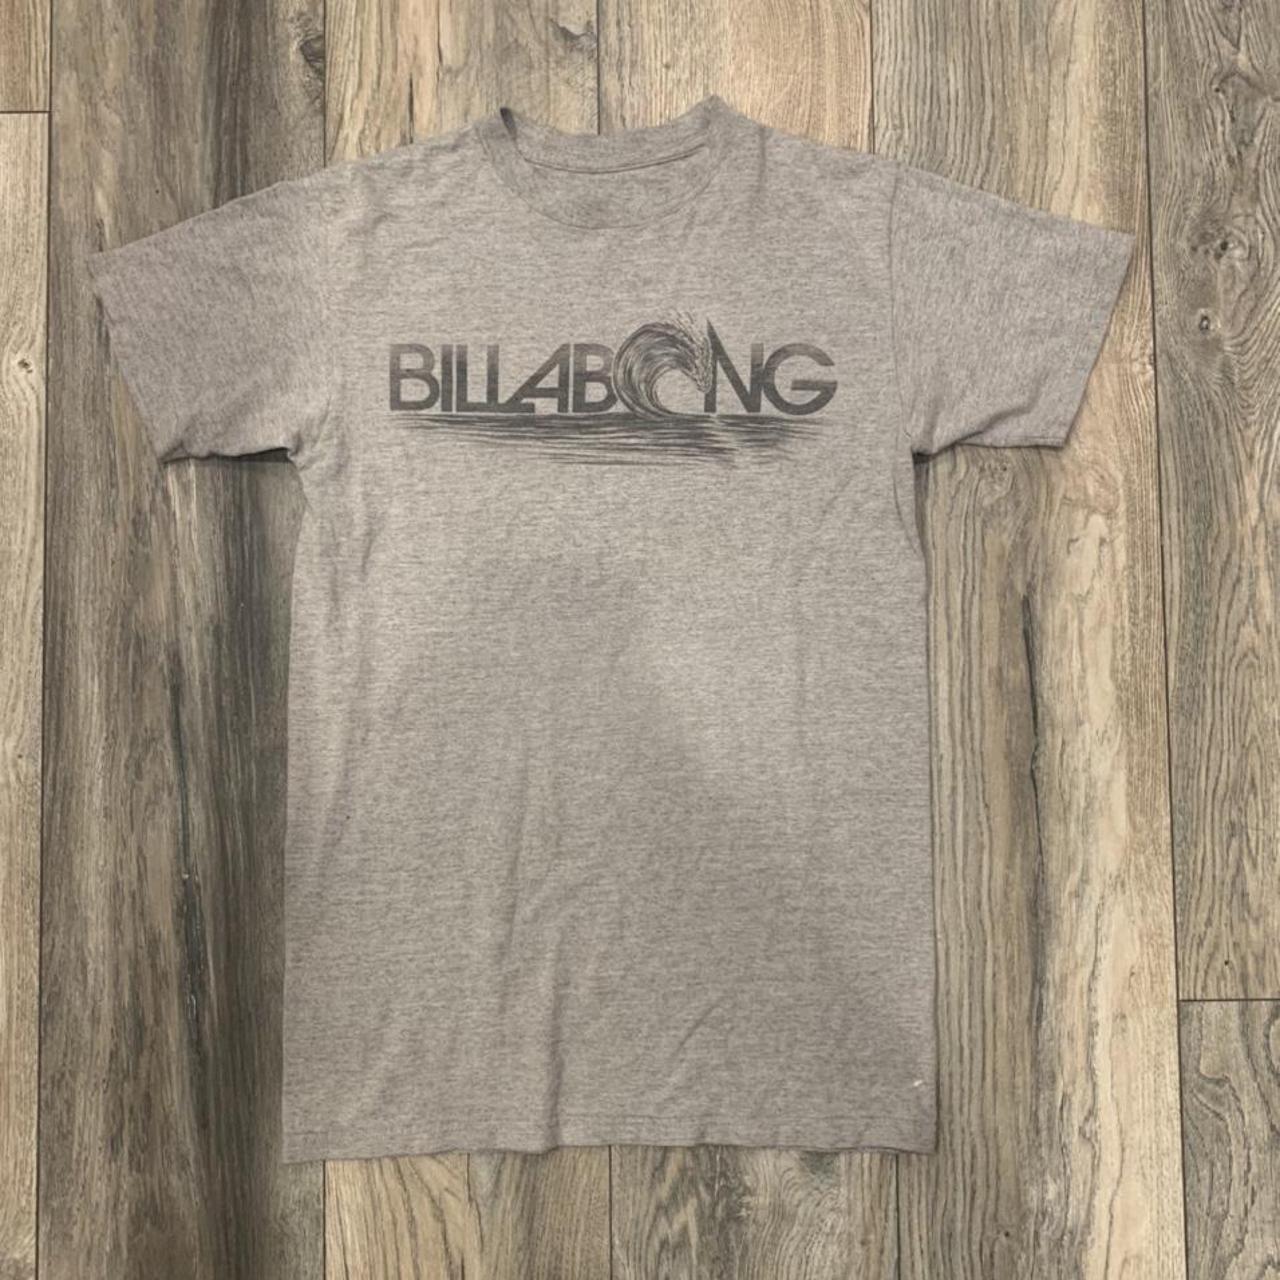 Billabong Men's Grey T-shirt | Depop